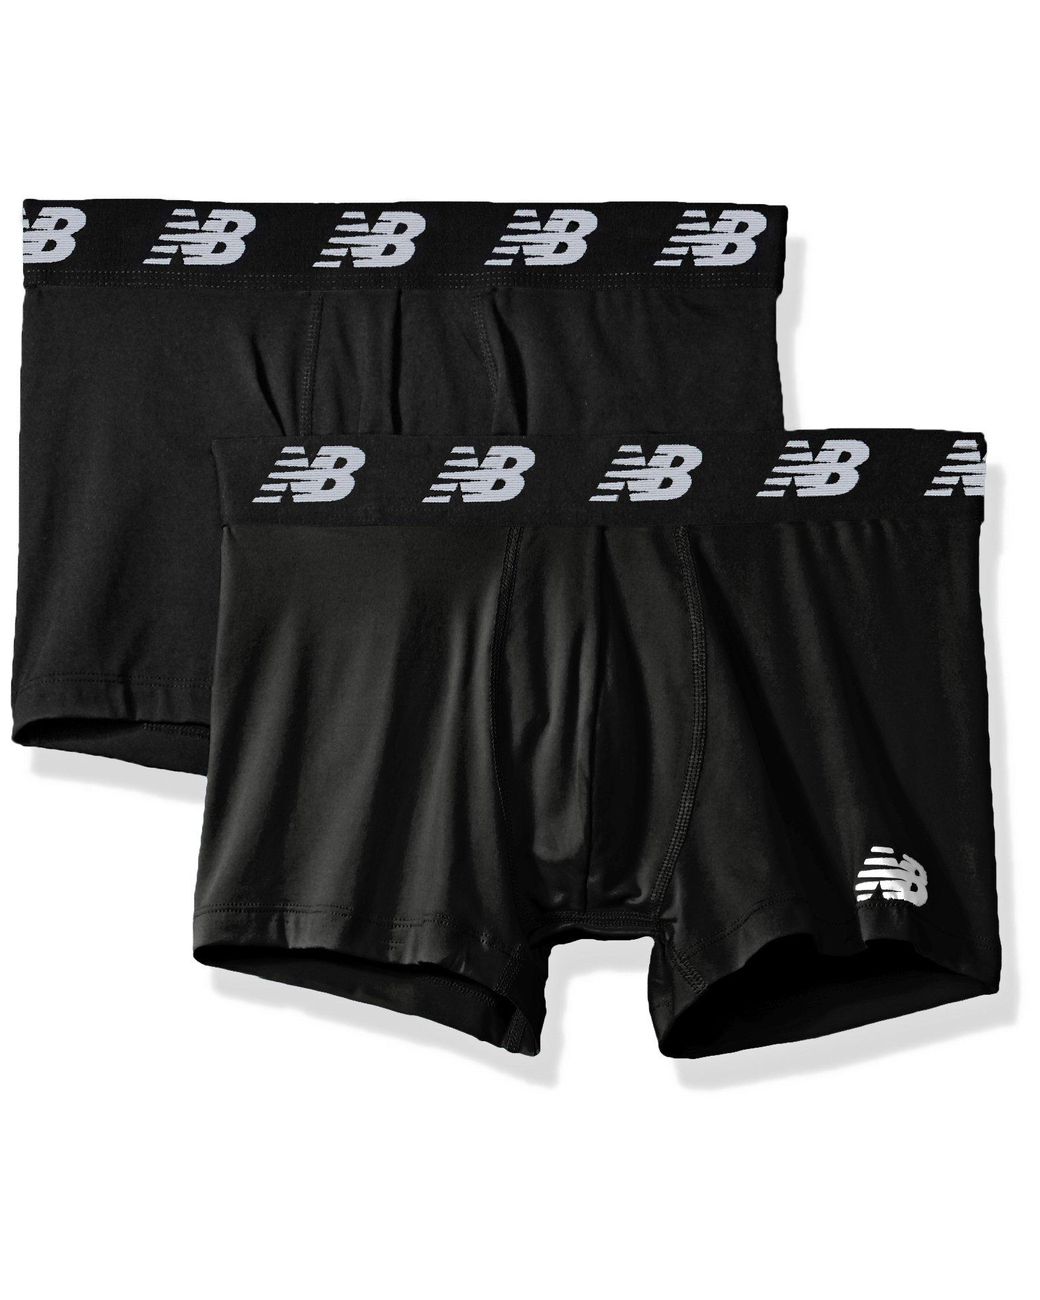 New Balance Premium Performance 3 Trunk Underwear in Black for Men